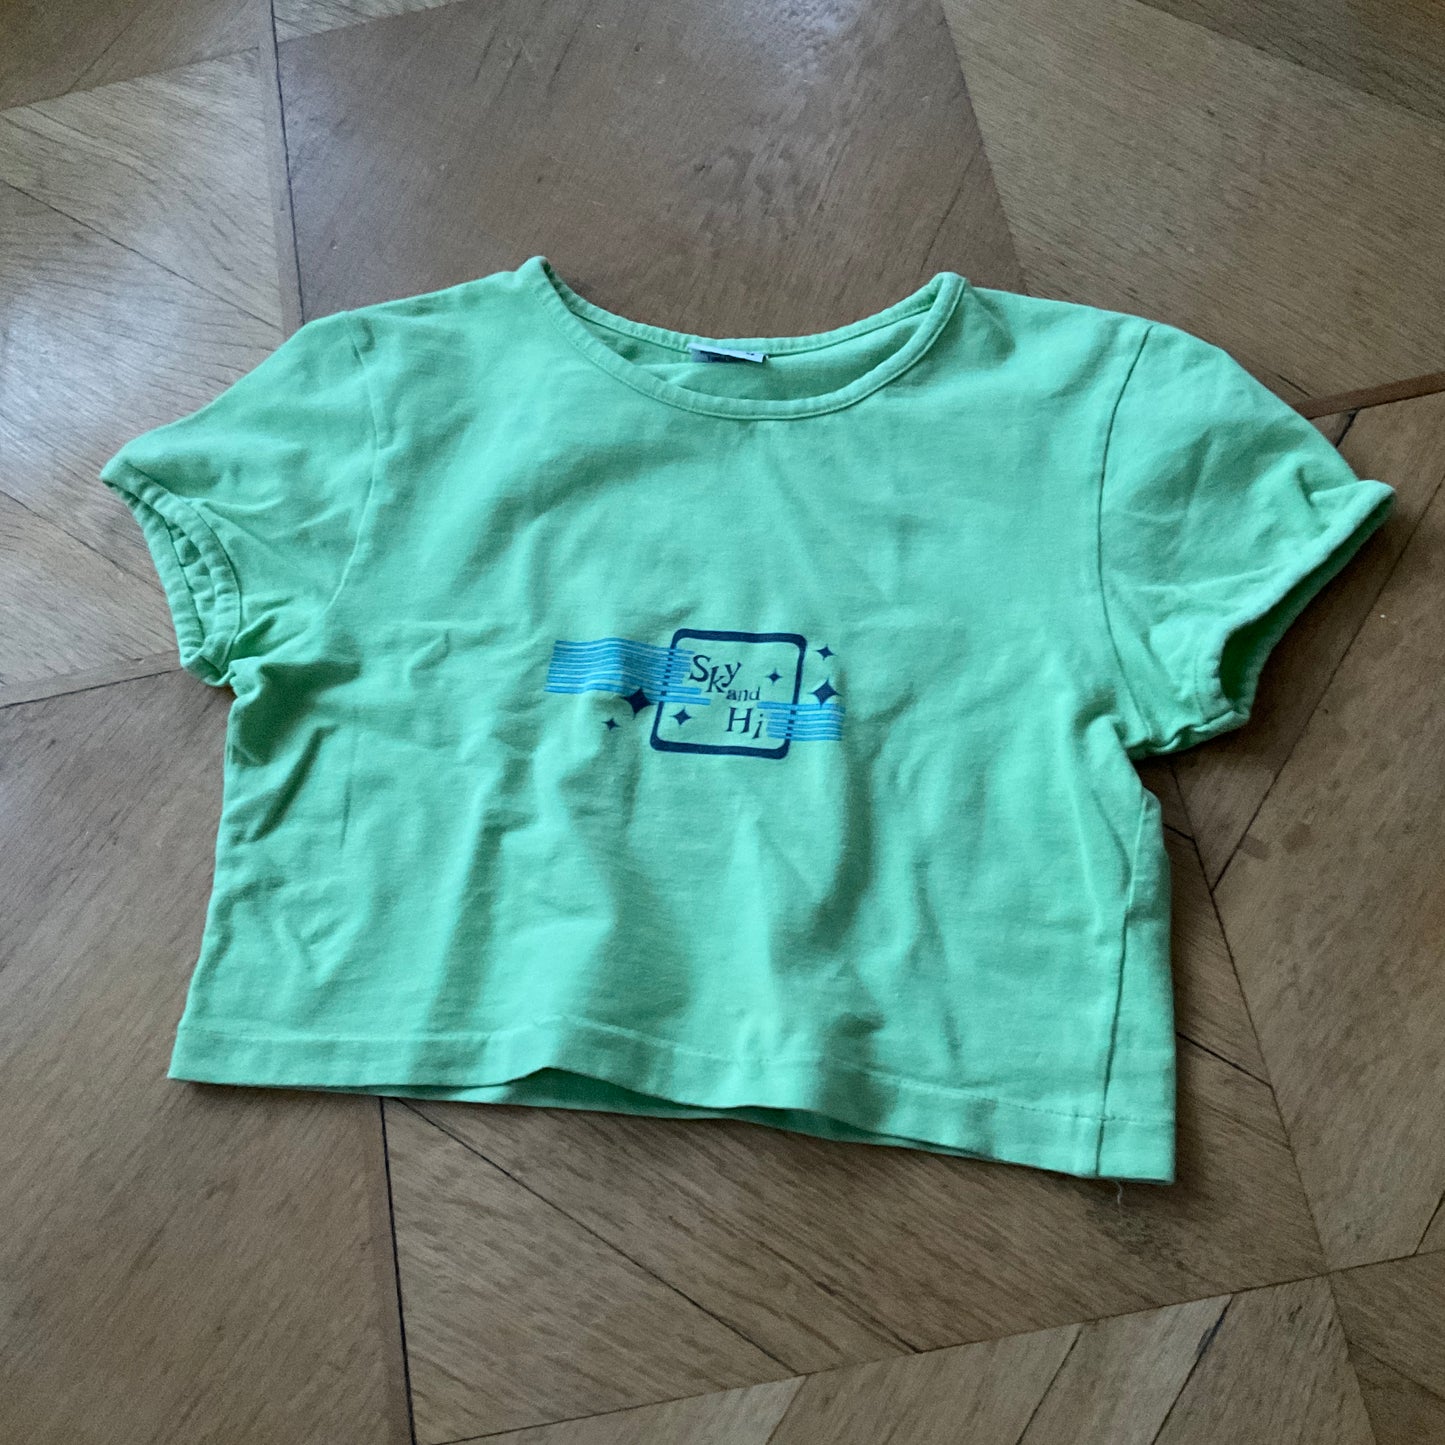 Green 90s t-shirt